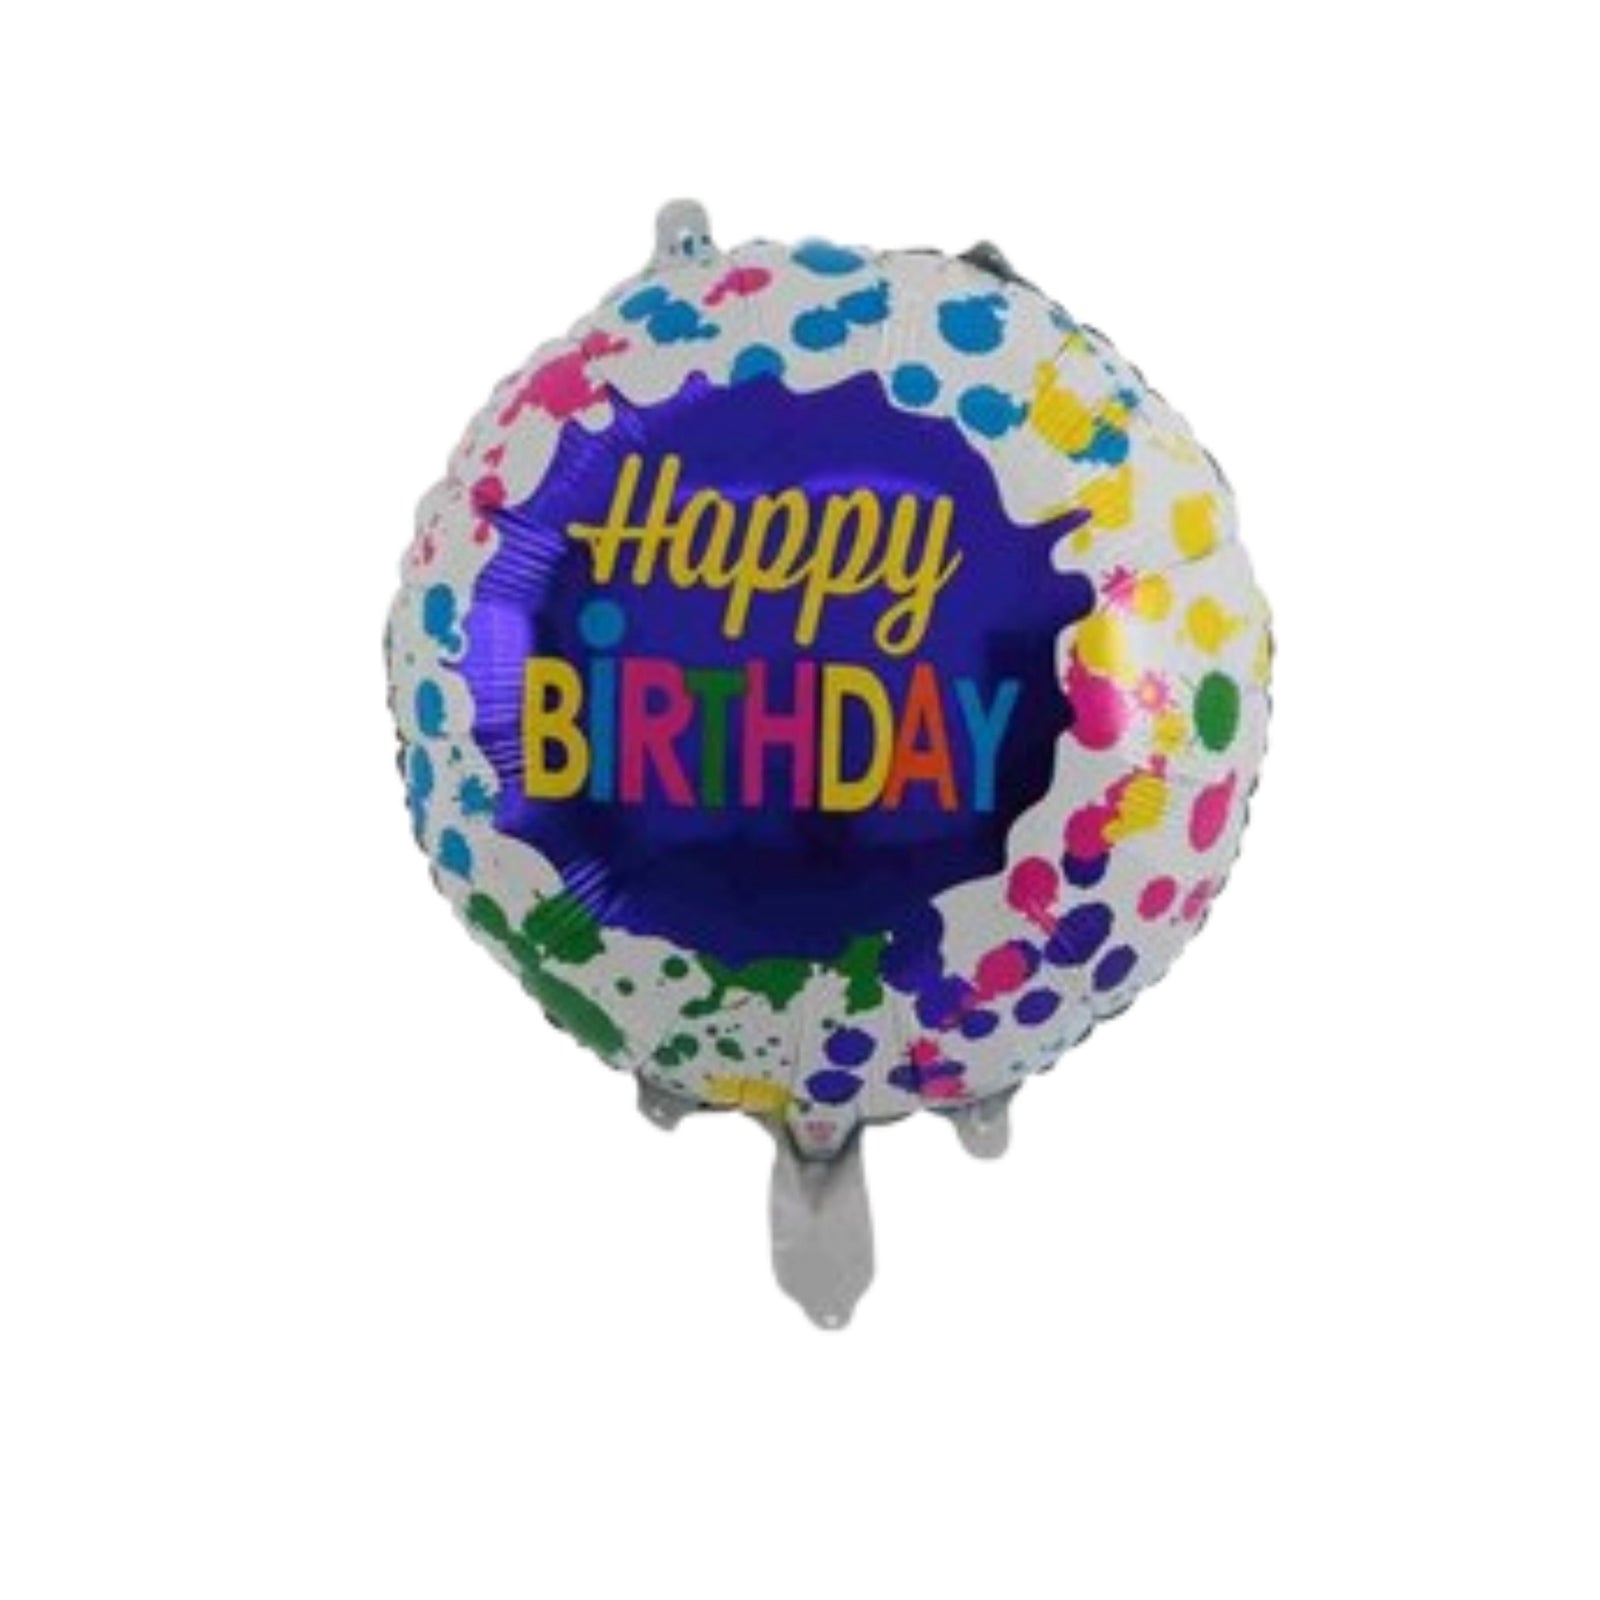 Colour splash Happy Birthday round Foil Balloon